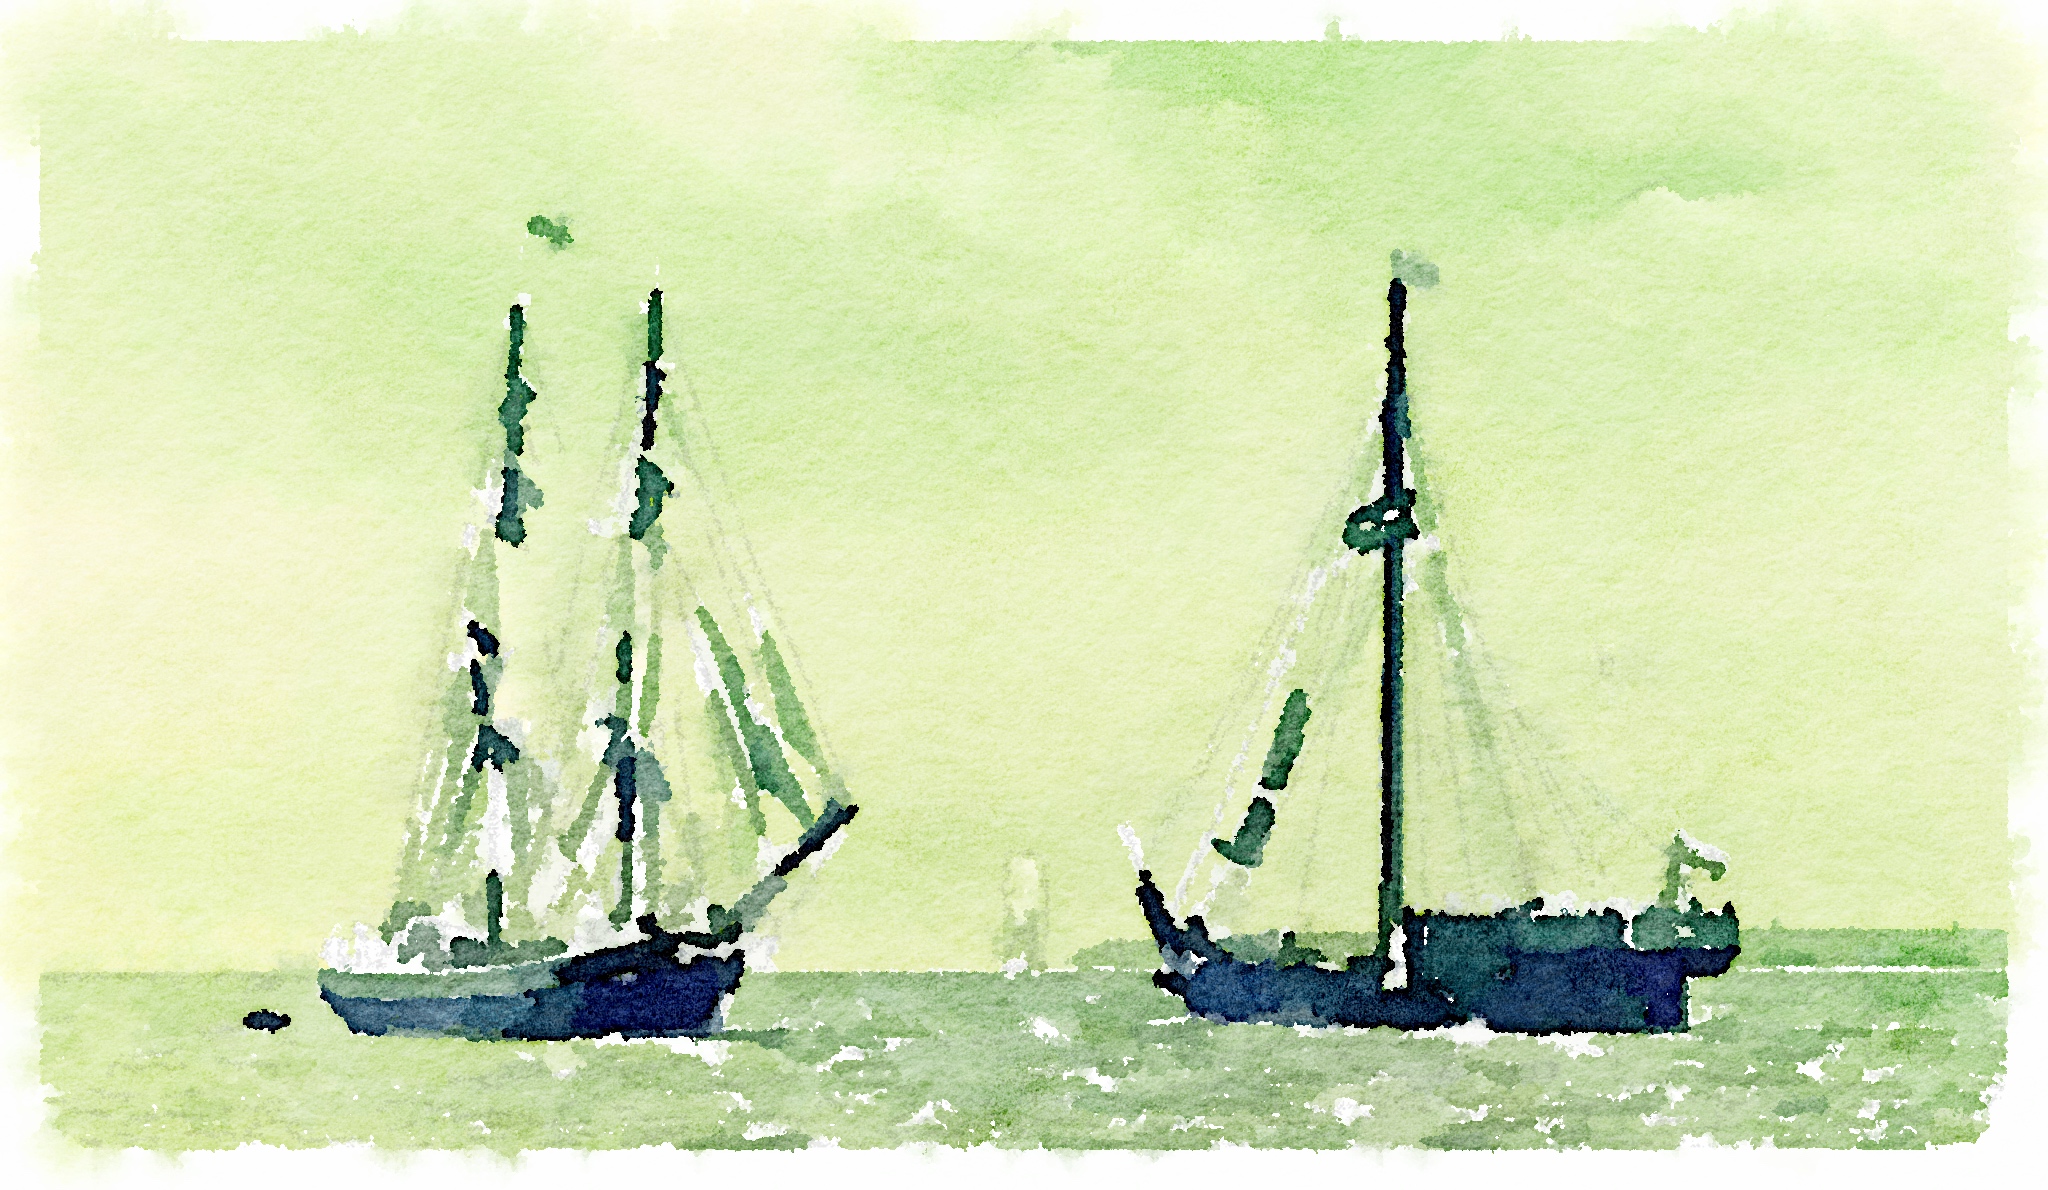 sails furled